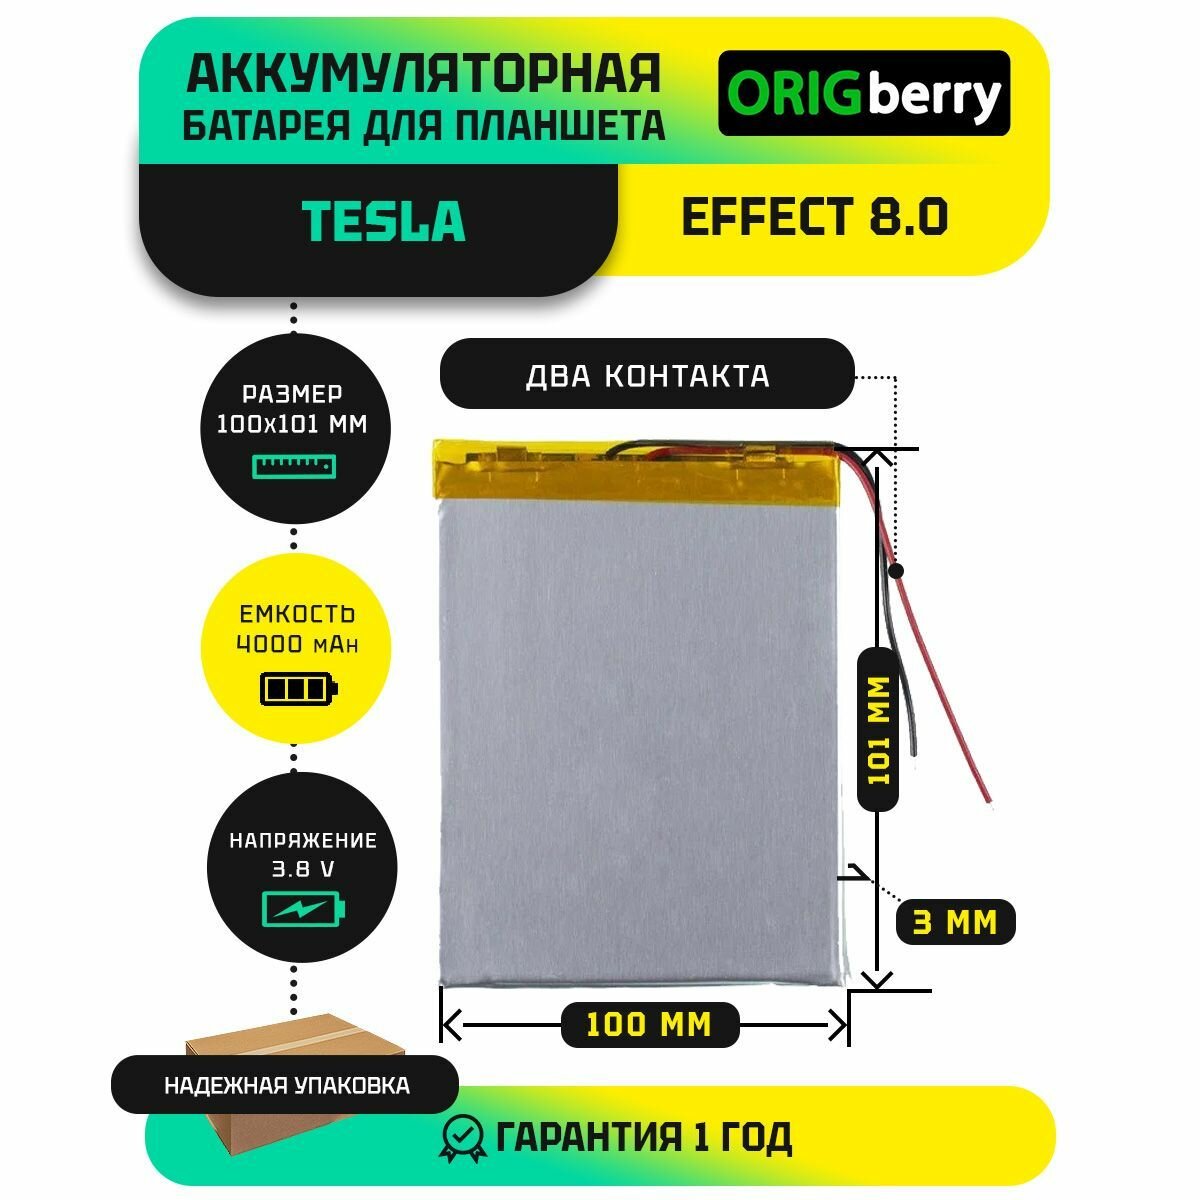 Аккумулятор для планшета Tesla Effect 8.0 3G 38 V / 4000 mAh / 101мм x 100мм x 3мм / без коннектора